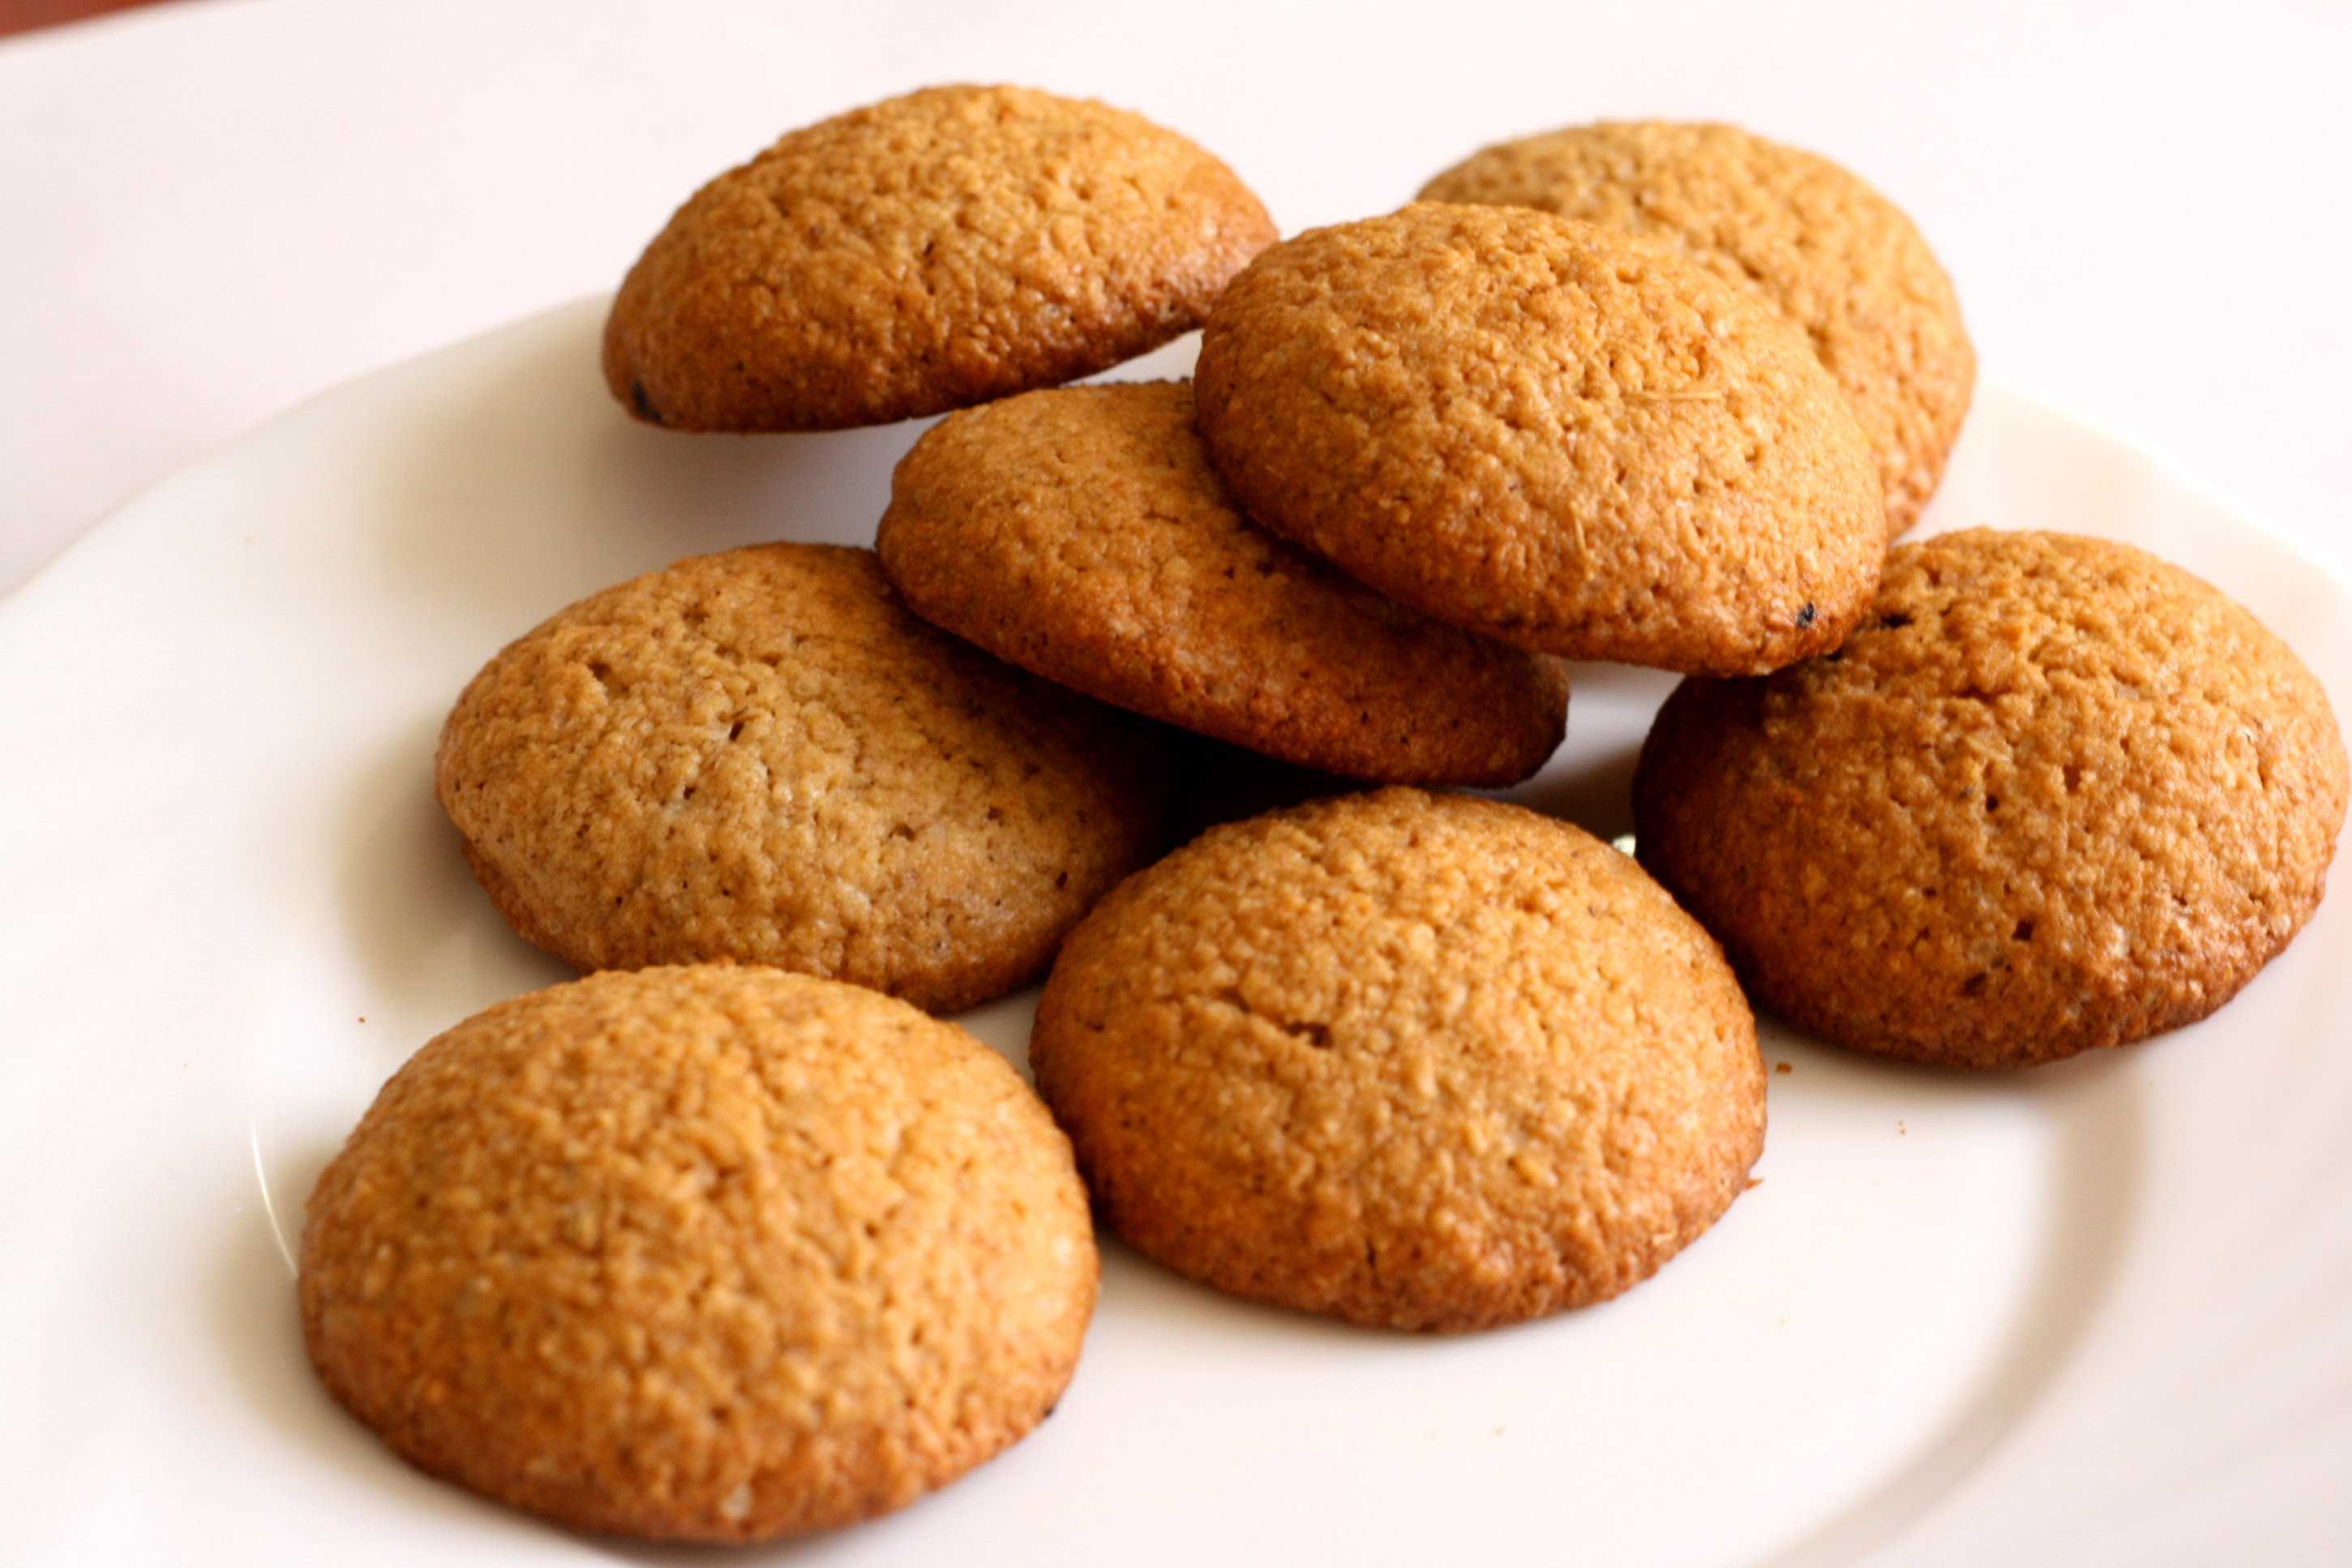 Овсяное печенье в домашних условиях - 5 рецептов очень вкусного печенья из овсяных хлопьев